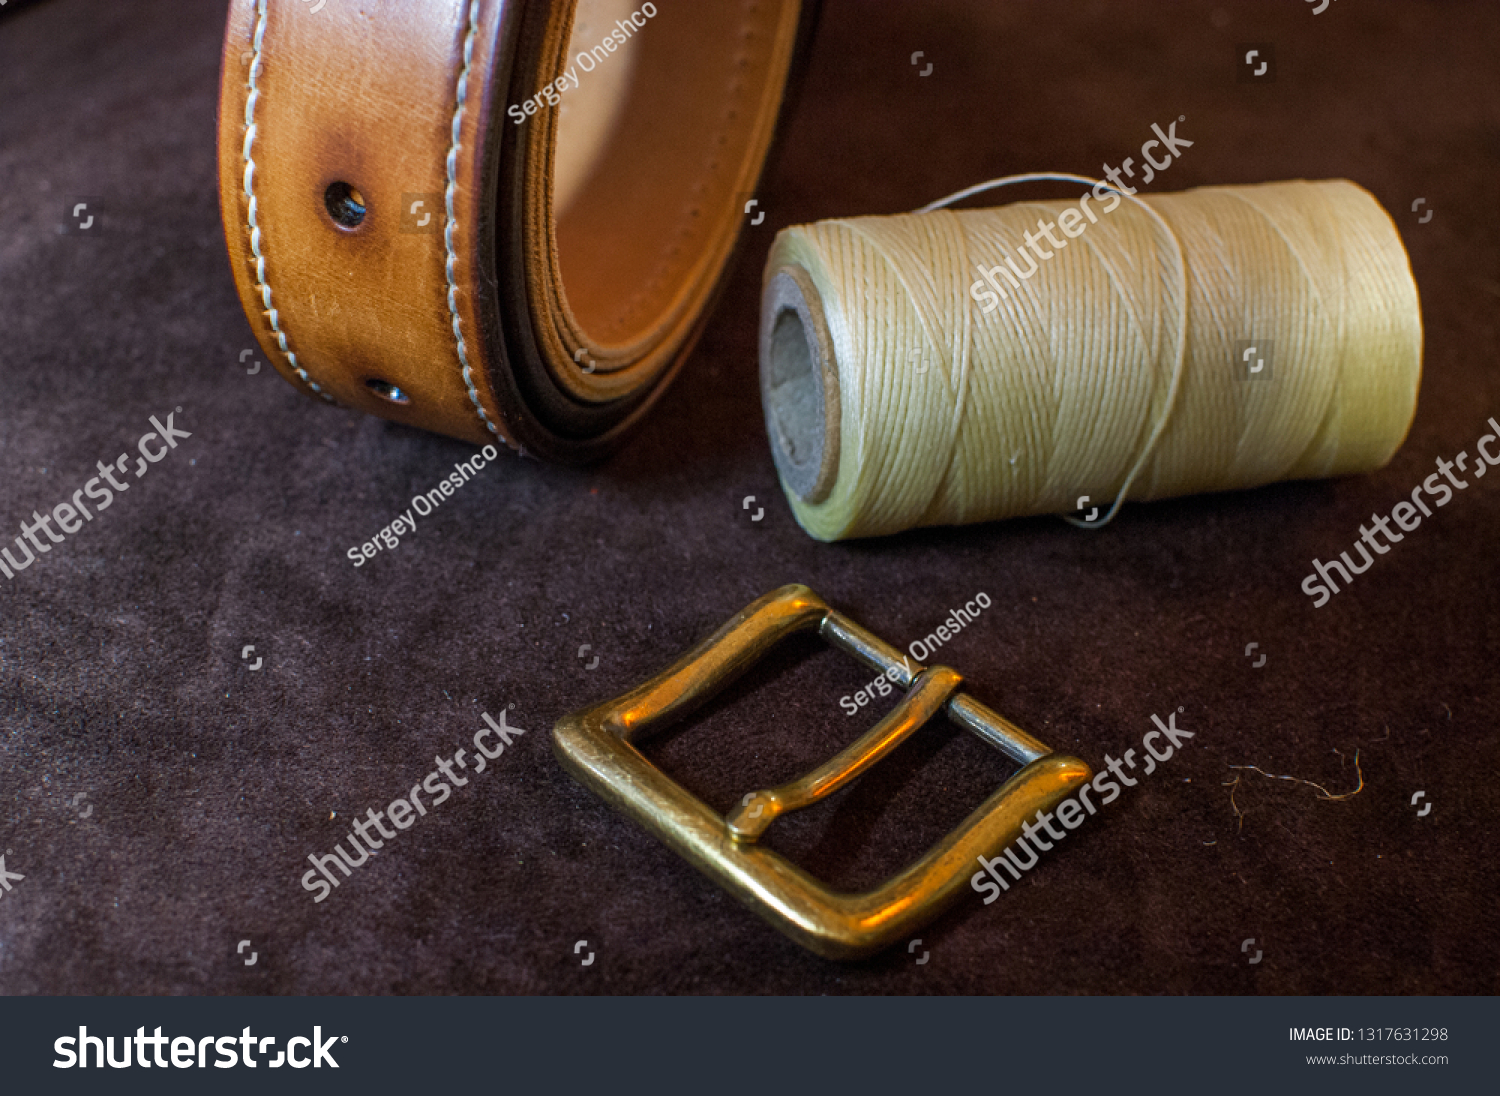 belt making accessories